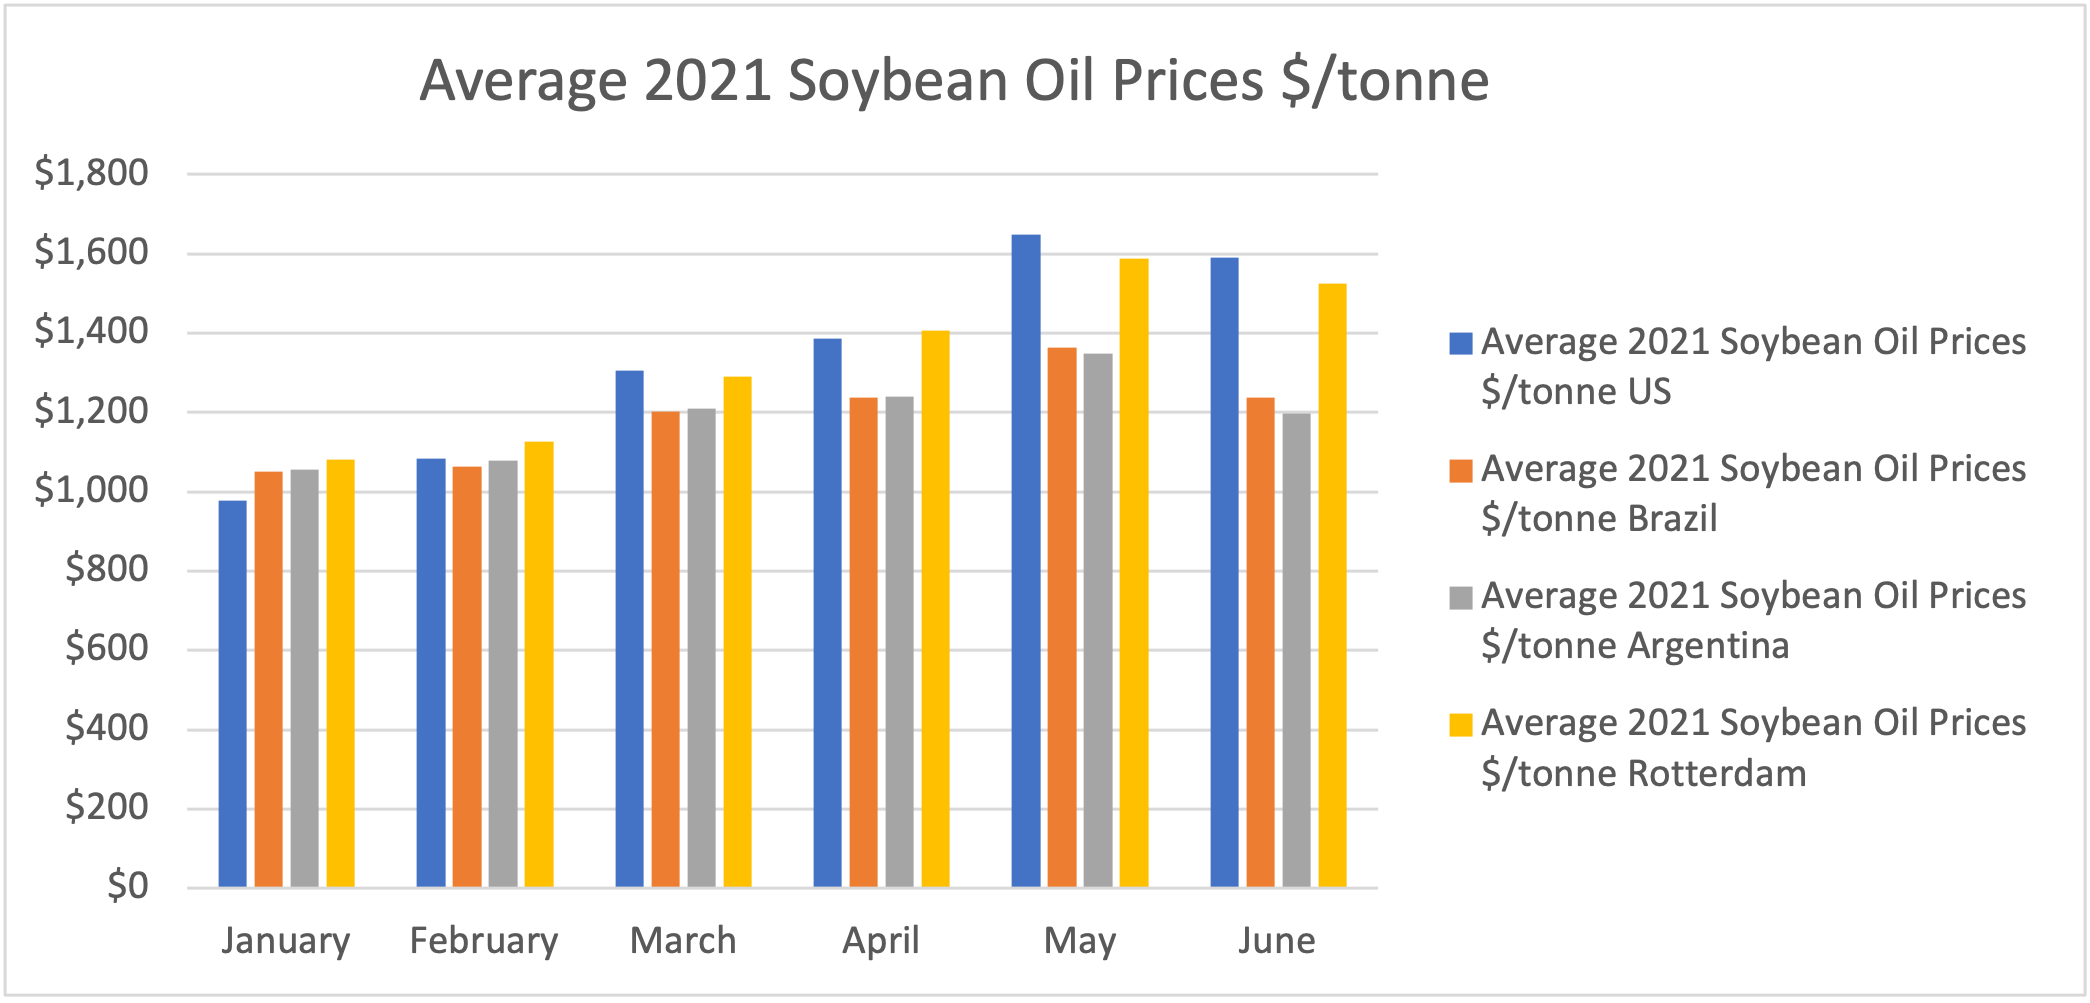 Average 2021 Soybean Oil Prices